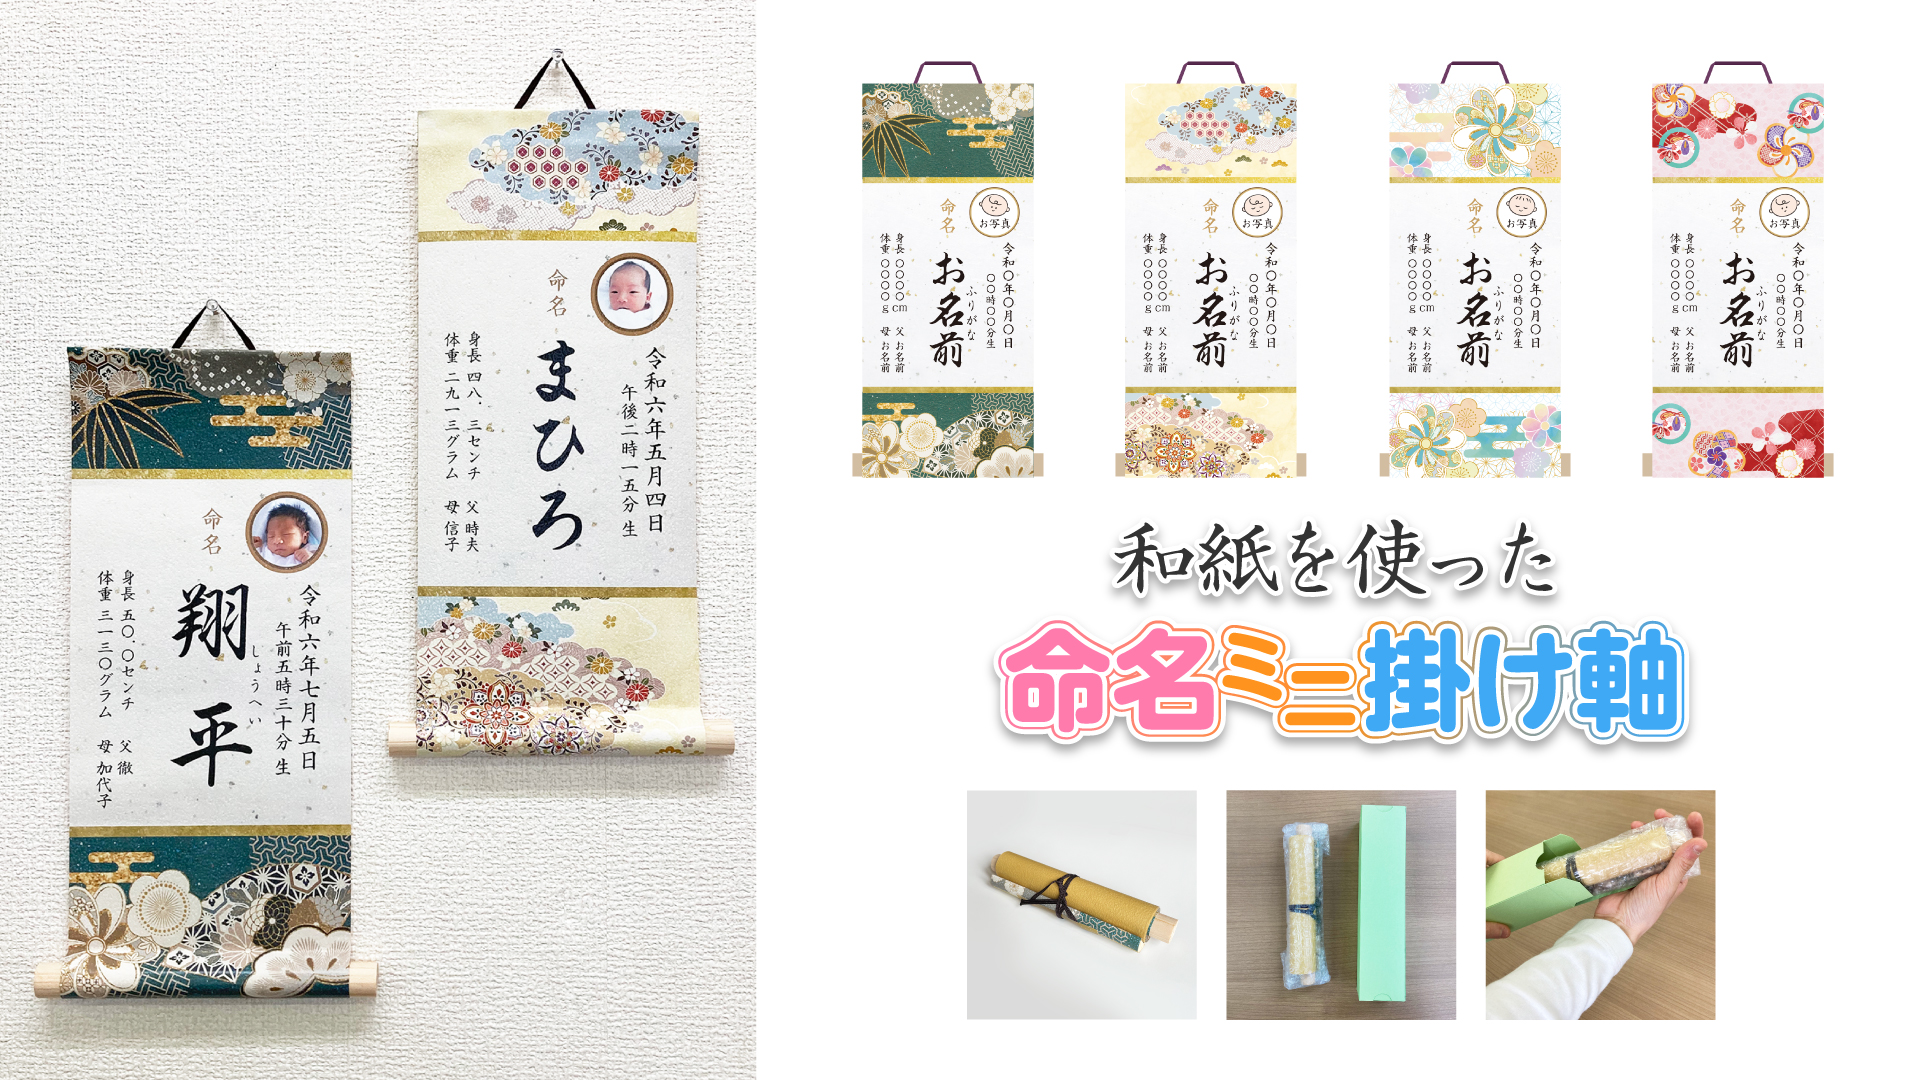 【新商品】受注生産品「和紙を使った命名ミニ掛け軸」をCreemaにて販売を開始しました。